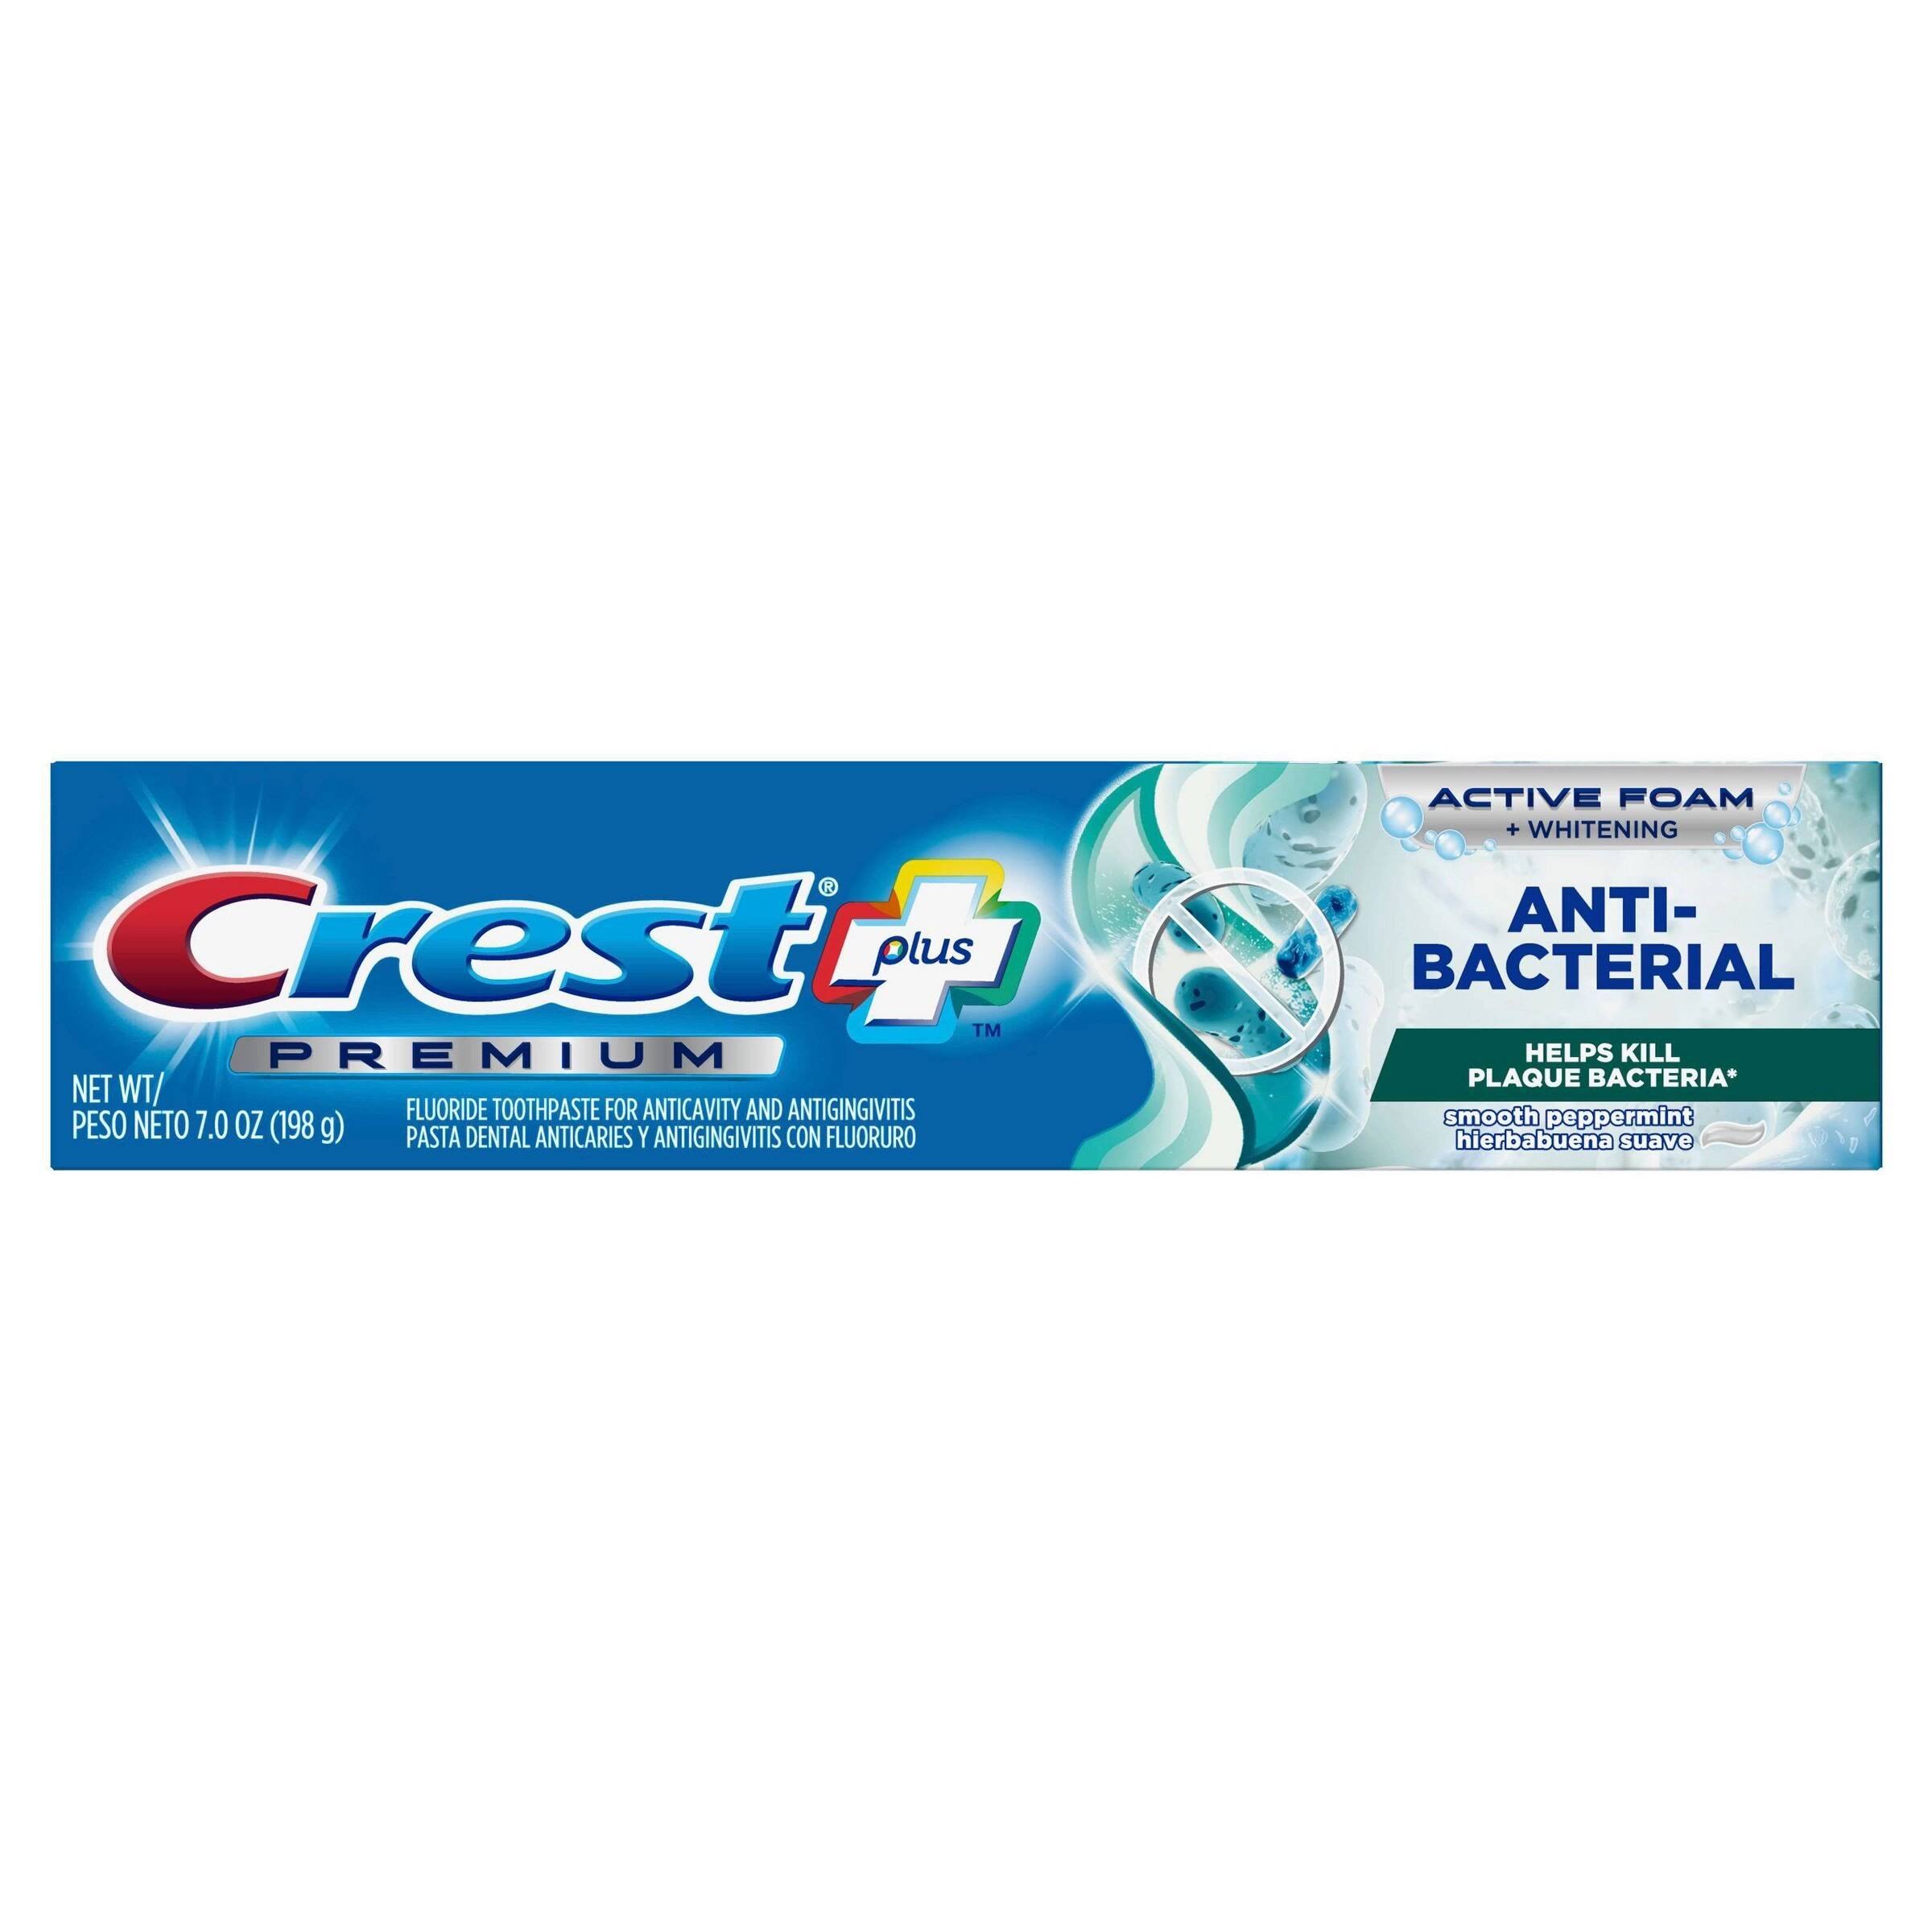 Crest Plus Premium Anti-Bacterial Toothpaste, Active Foam + Whitening, 7 oz (198 g)